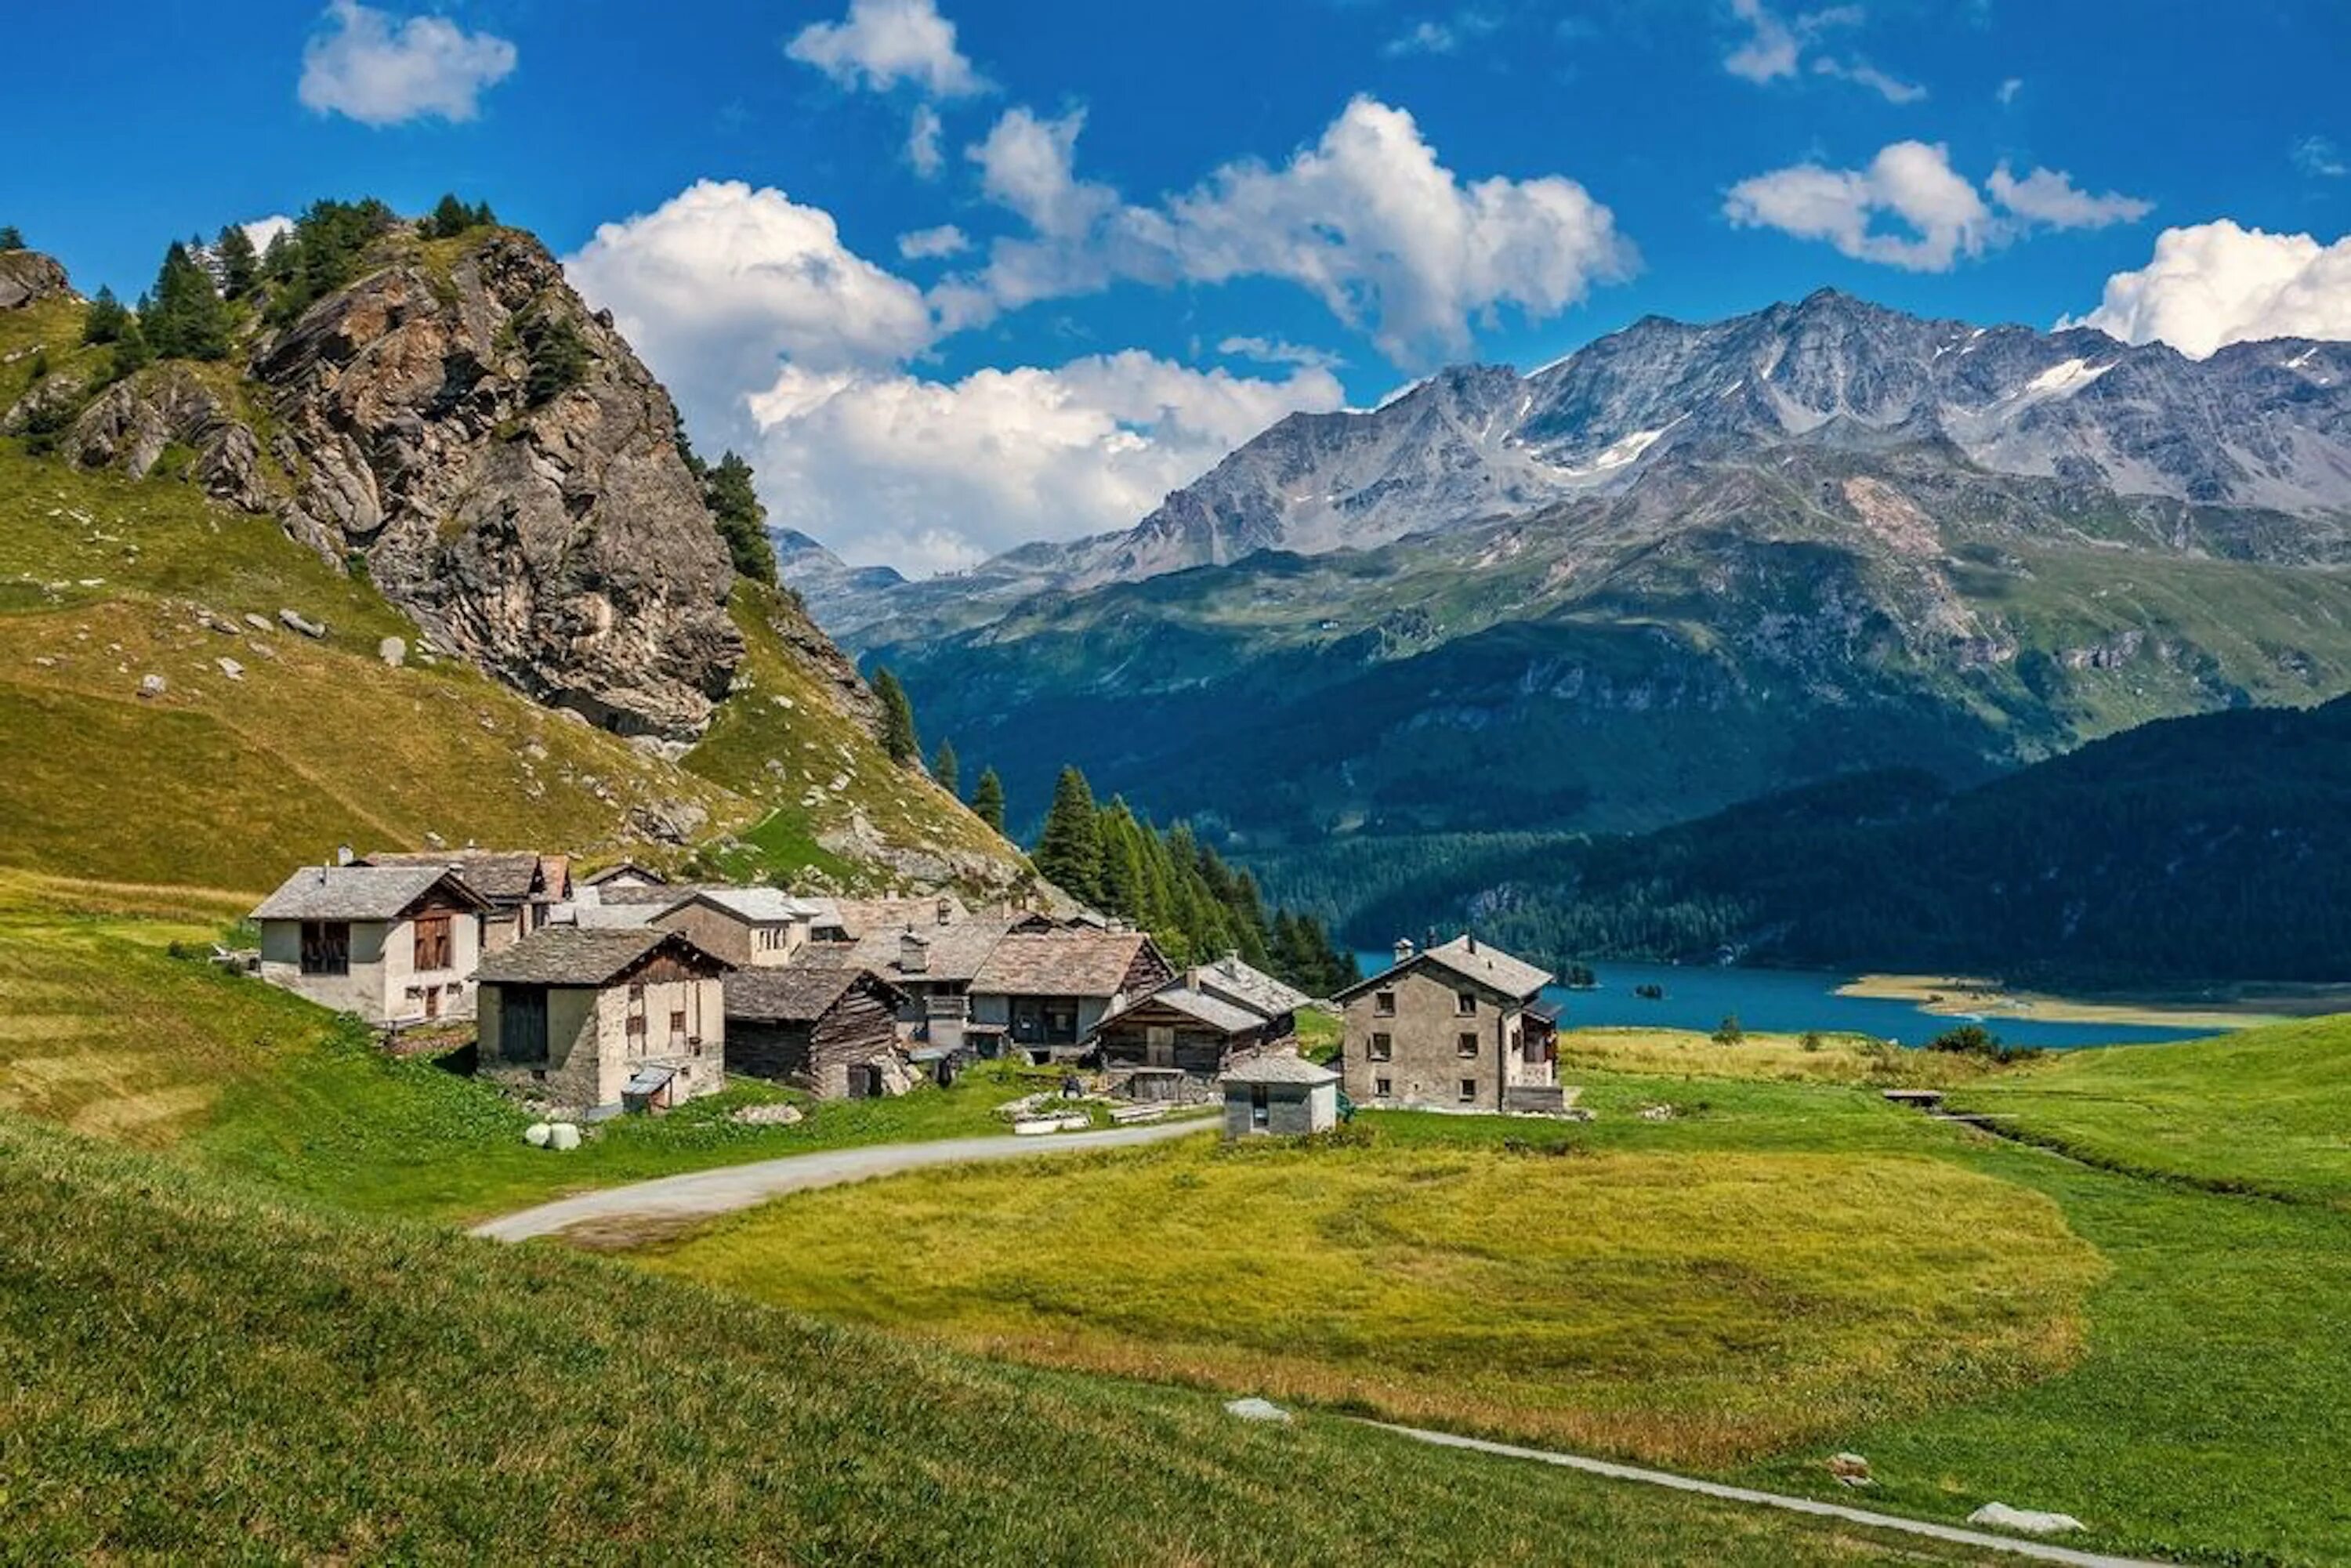 Das schweiz. Деревня в Швейцарии. Деревня в горах. Домик в Альпах. Деревня в Альпах.